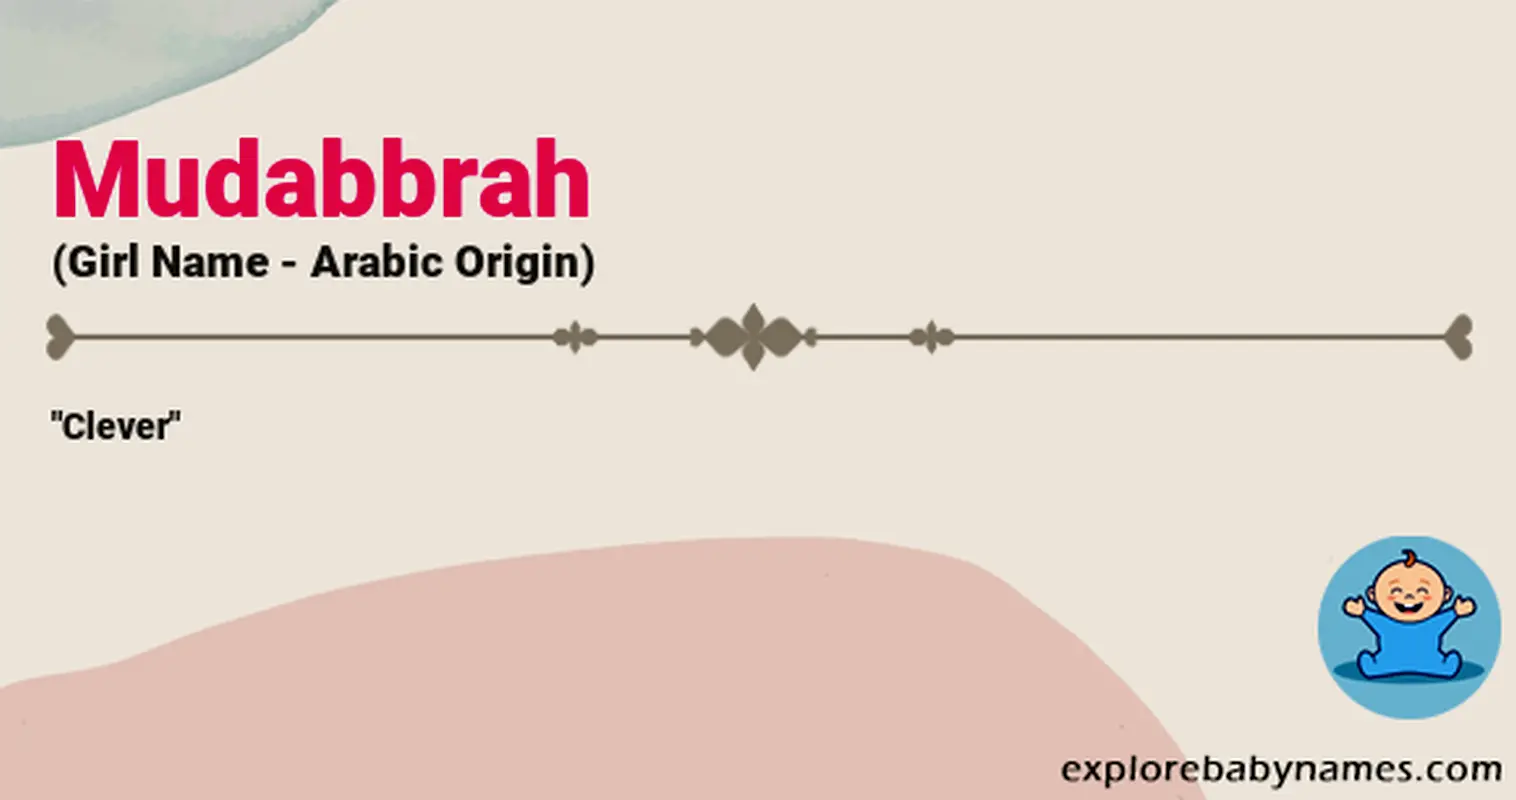 Meaning of Mudabbrah